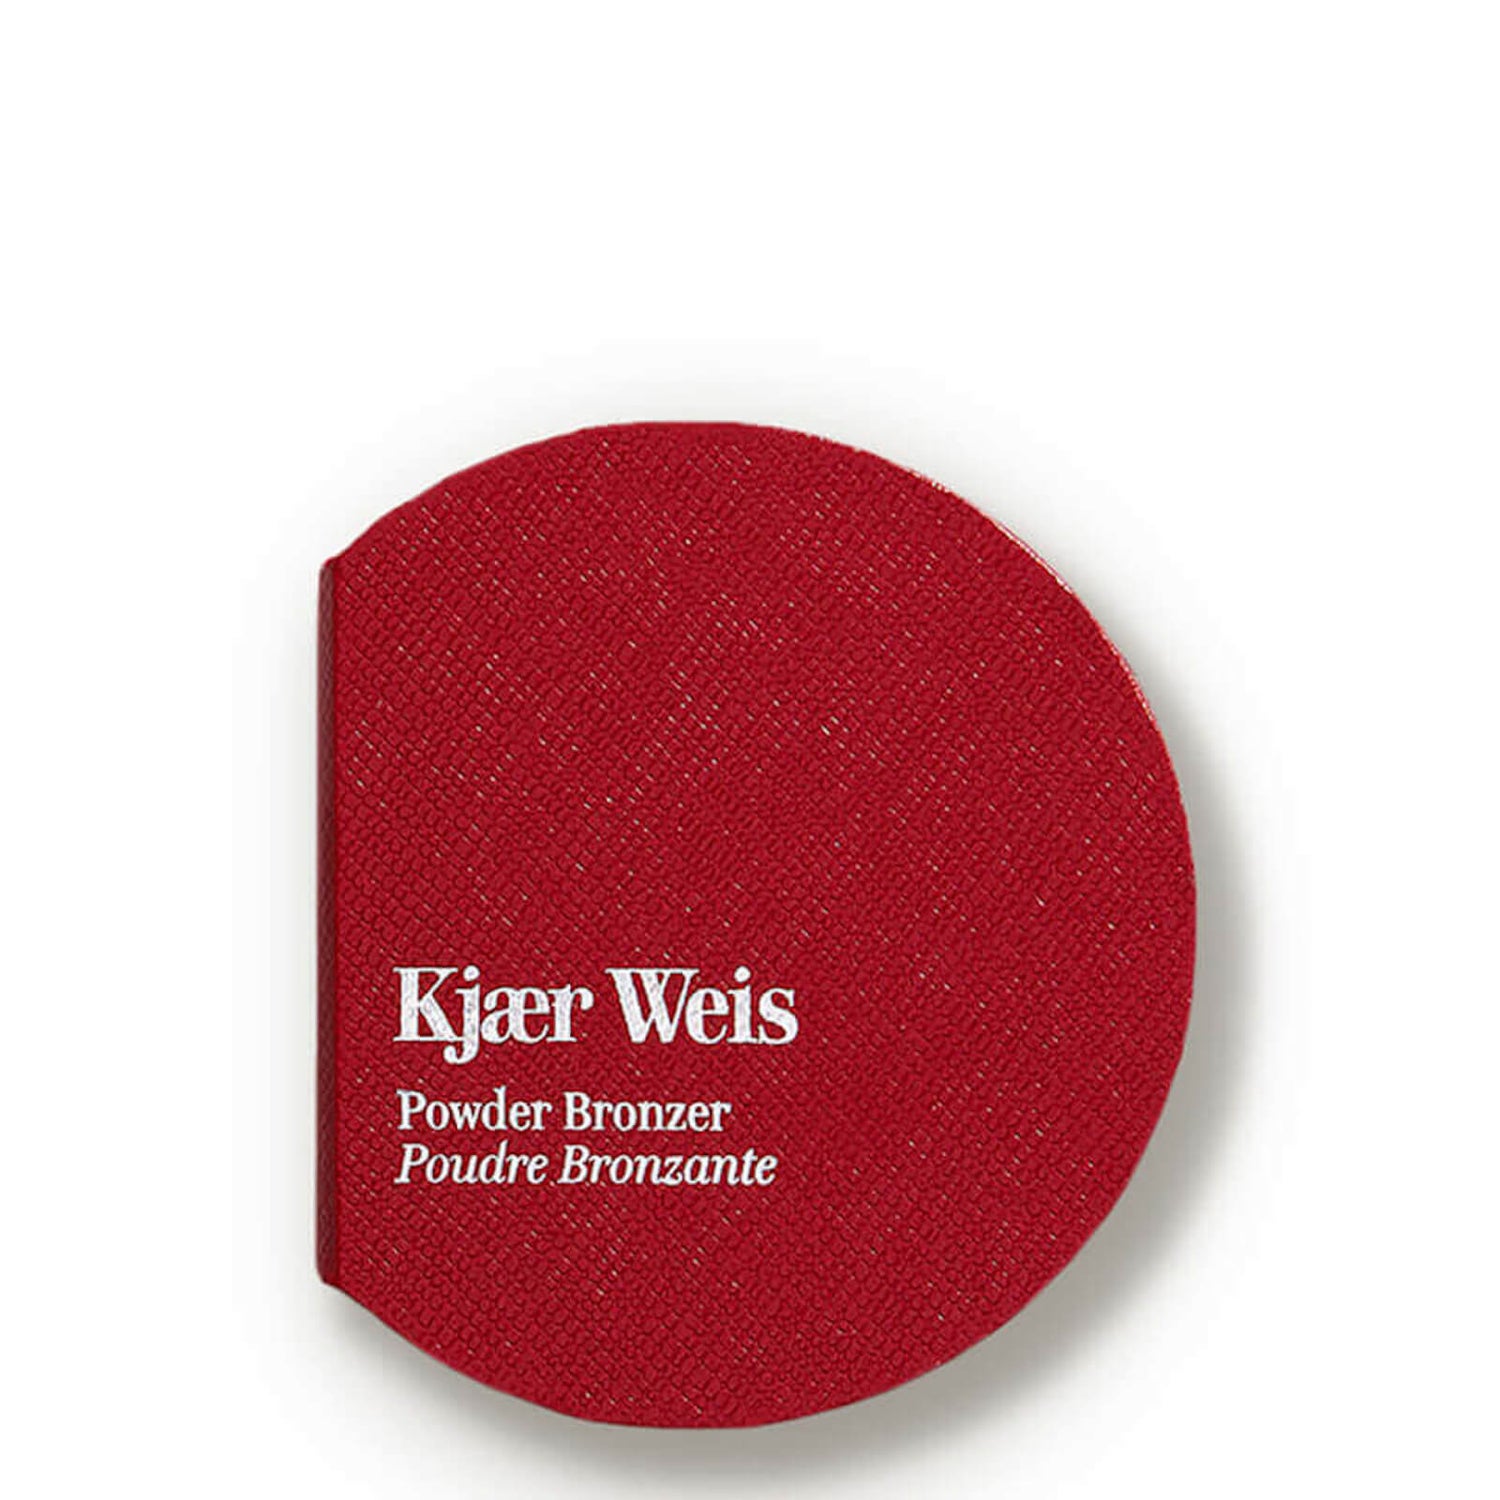 Kjaer Weis Red Edition Compact - Powder Bronzer (1 piece)